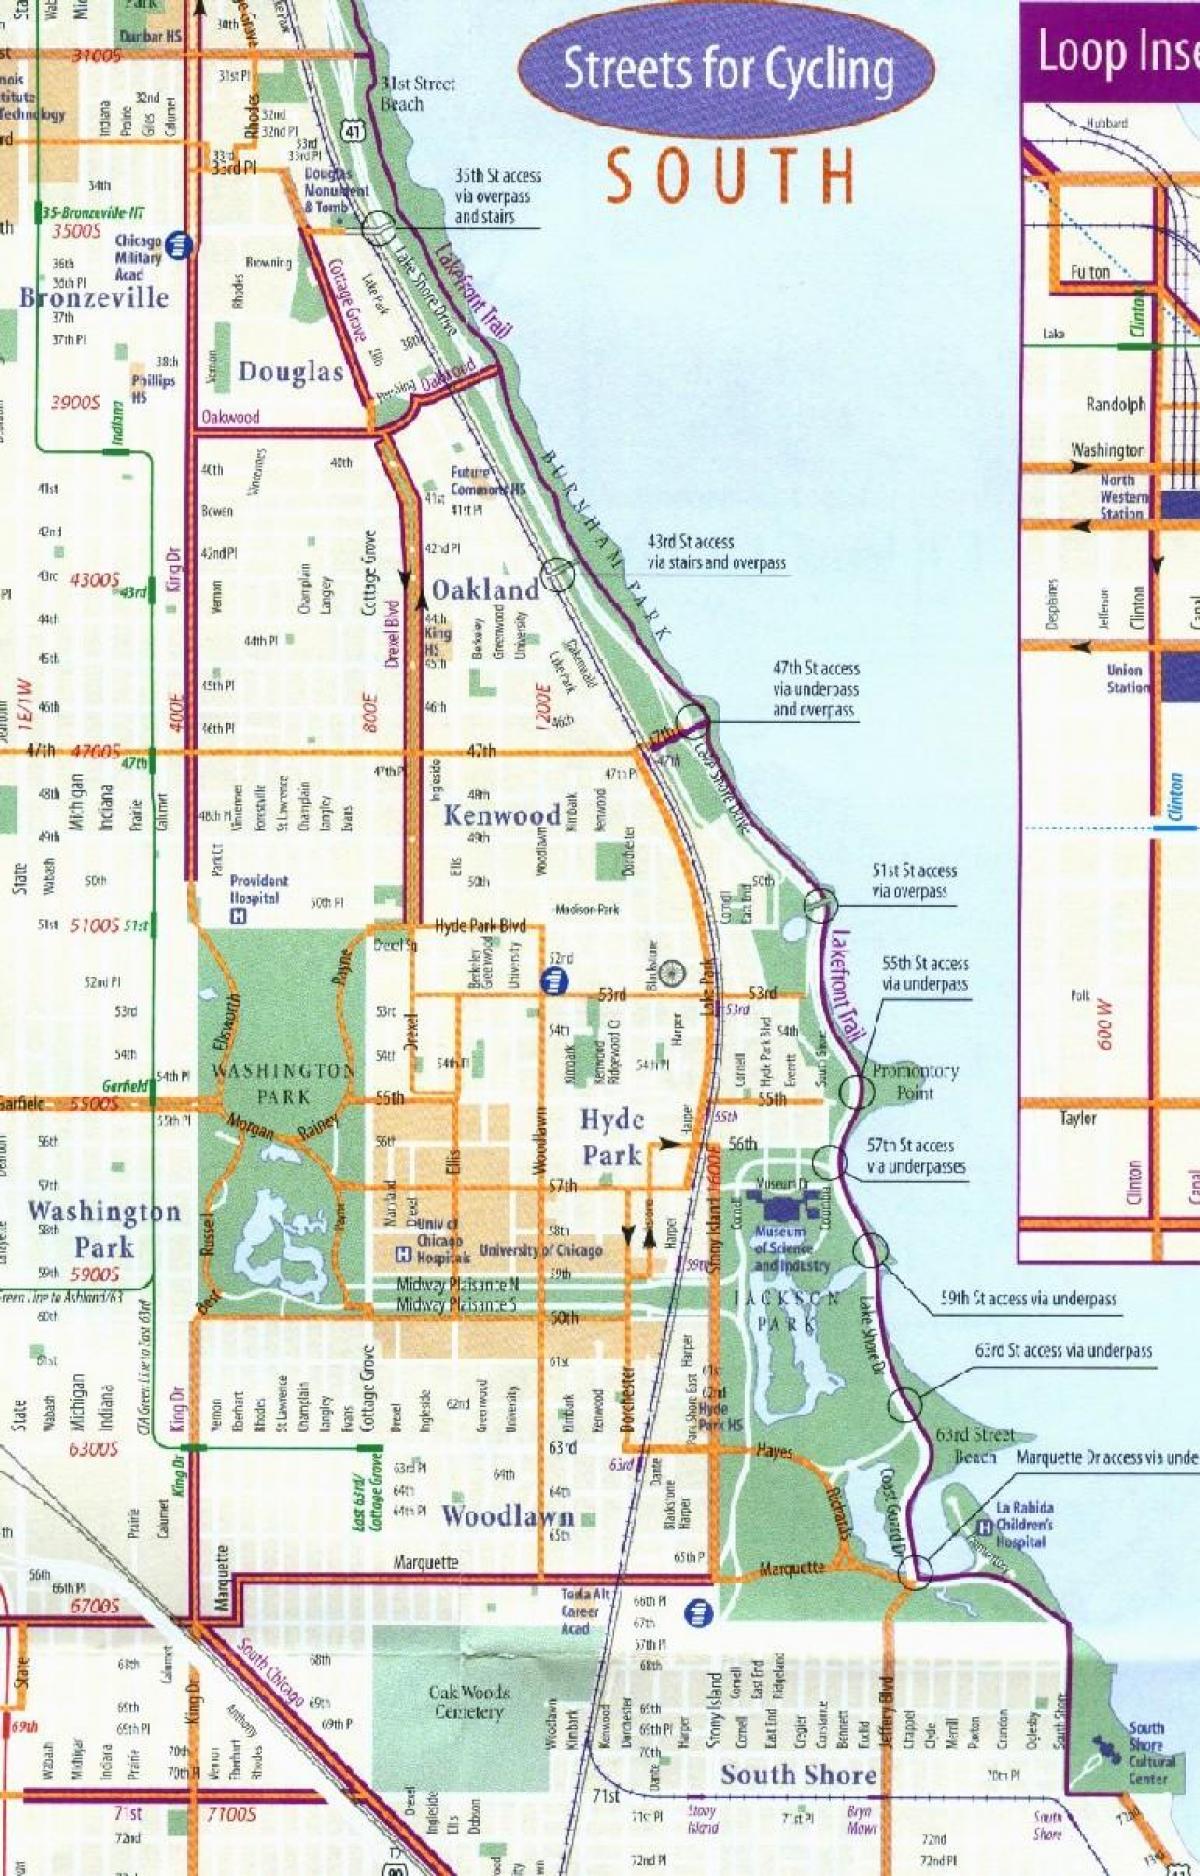 Chicago bike lane map